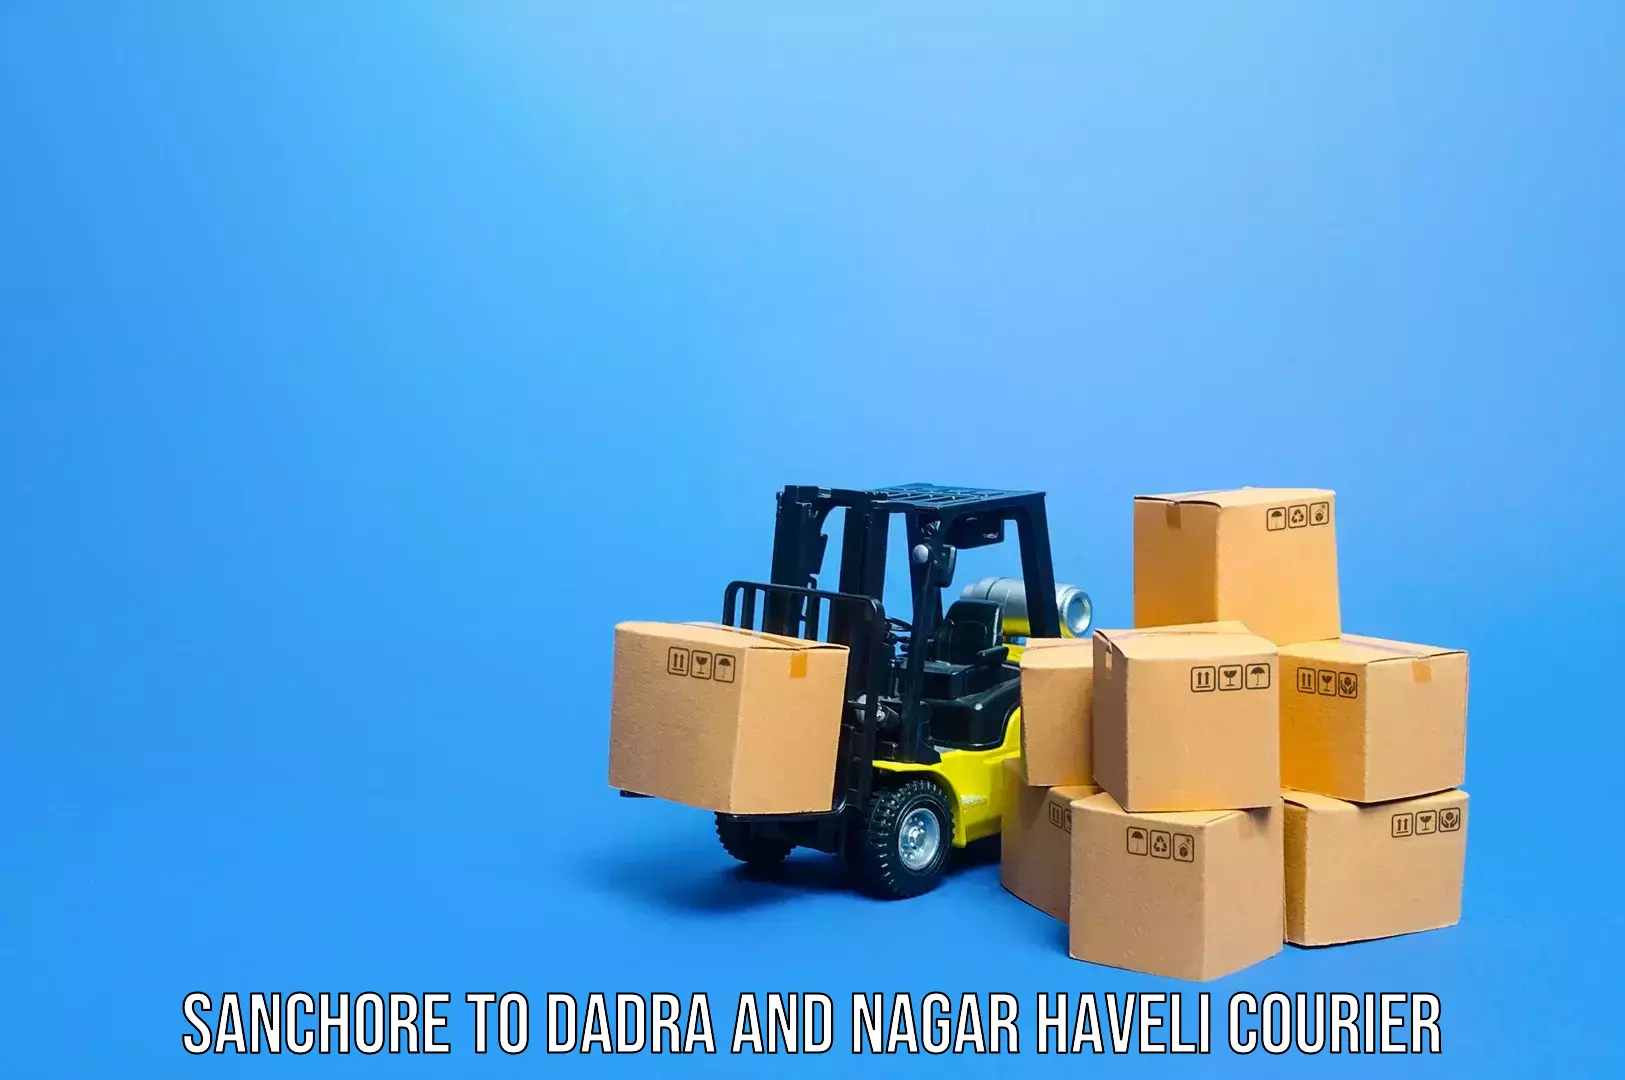 Baggage shipping service Sanchore to Dadra and Nagar Haveli